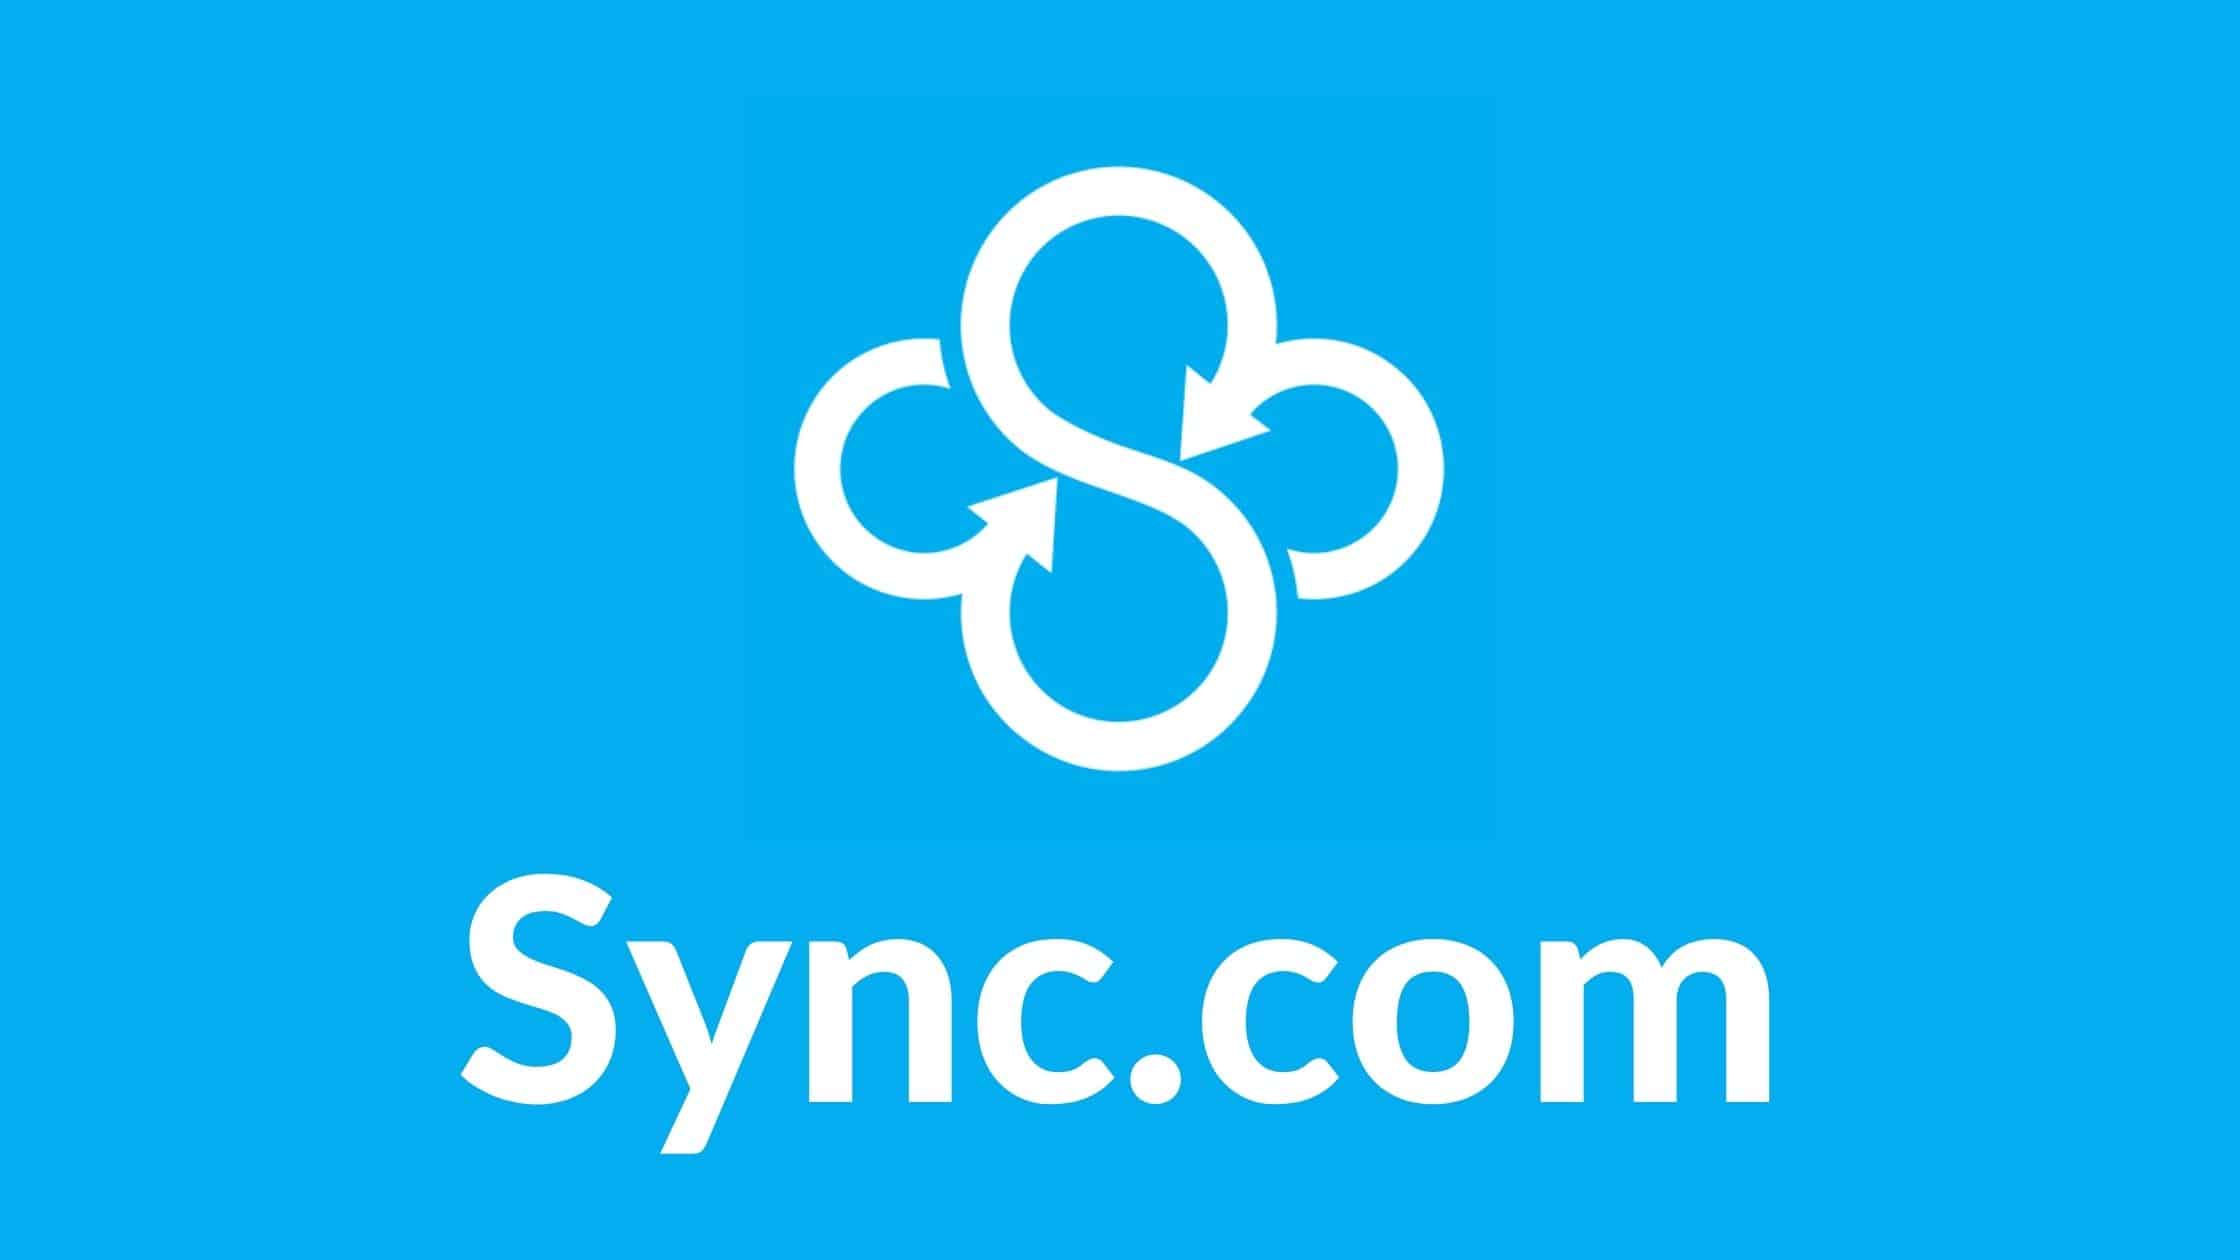 03 Sync.com